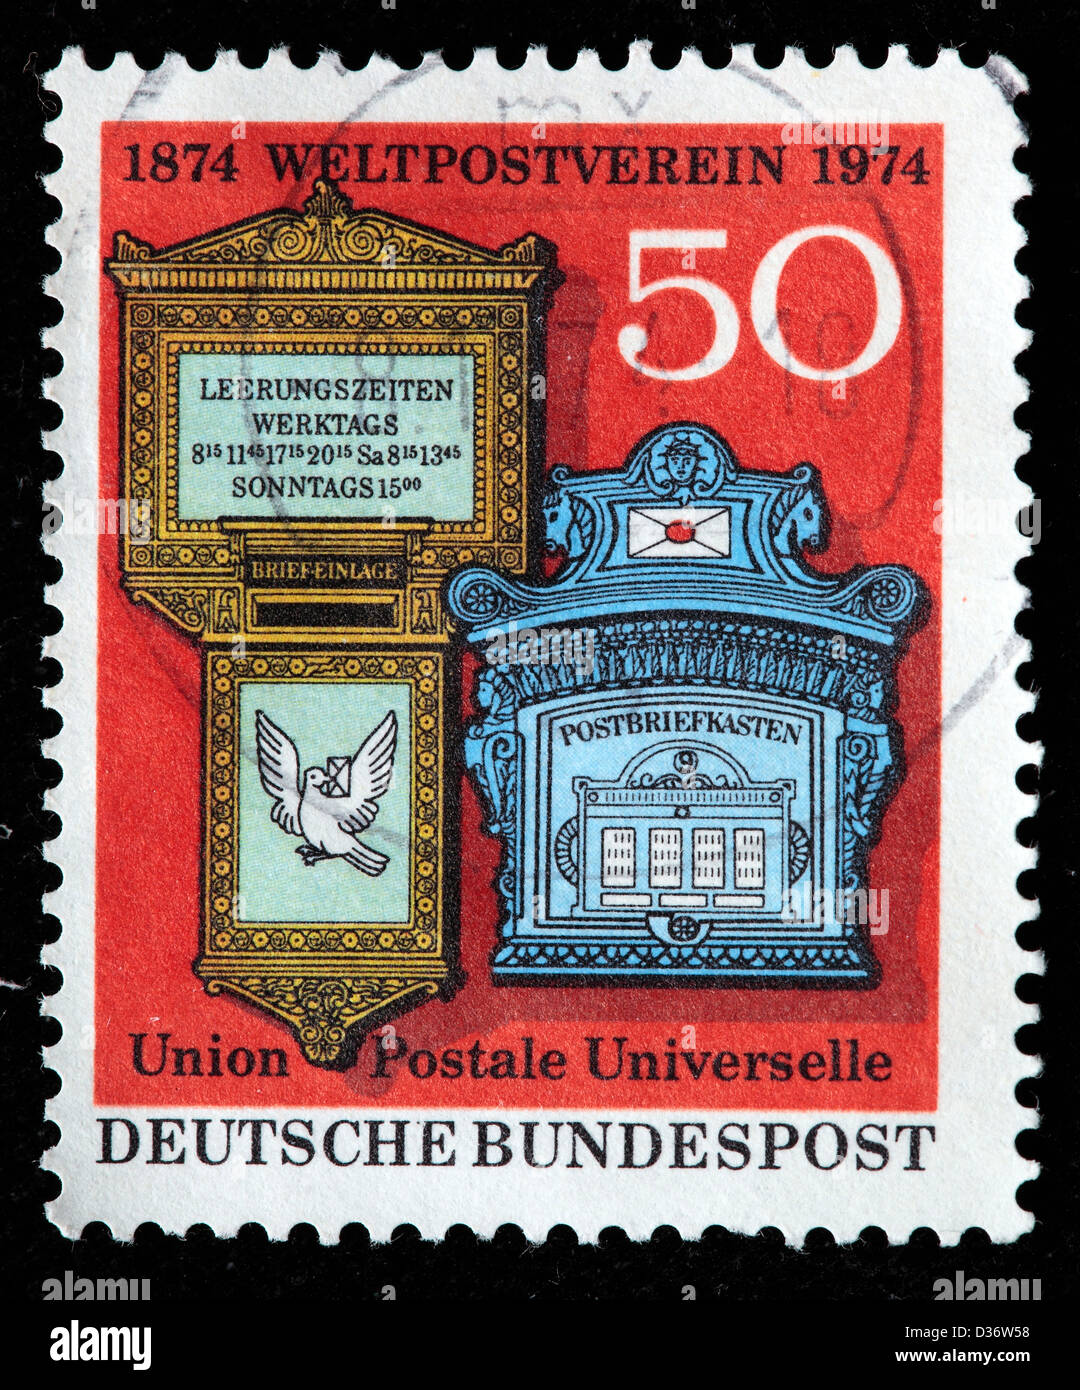 Svizzeri e Tedeschi del XIX secolo le caselle di posta, francobollo, Germania, 1974 Foto Stock